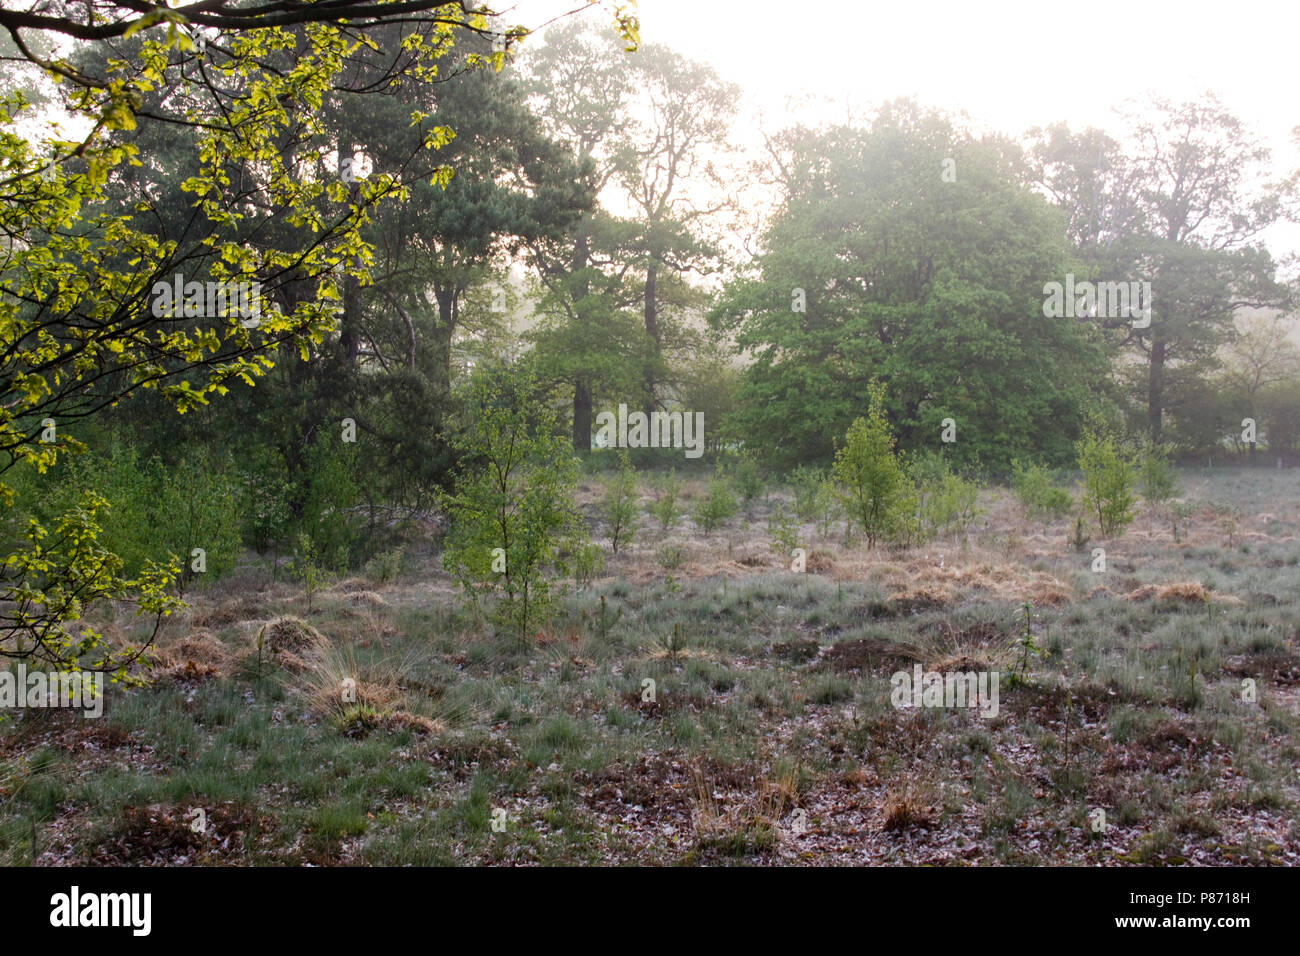 Bos en ochtendnevel de Vecht en Beneden Rogge; bosque de niebla matutina de Vecht en Beneden Rogge Foto de stock